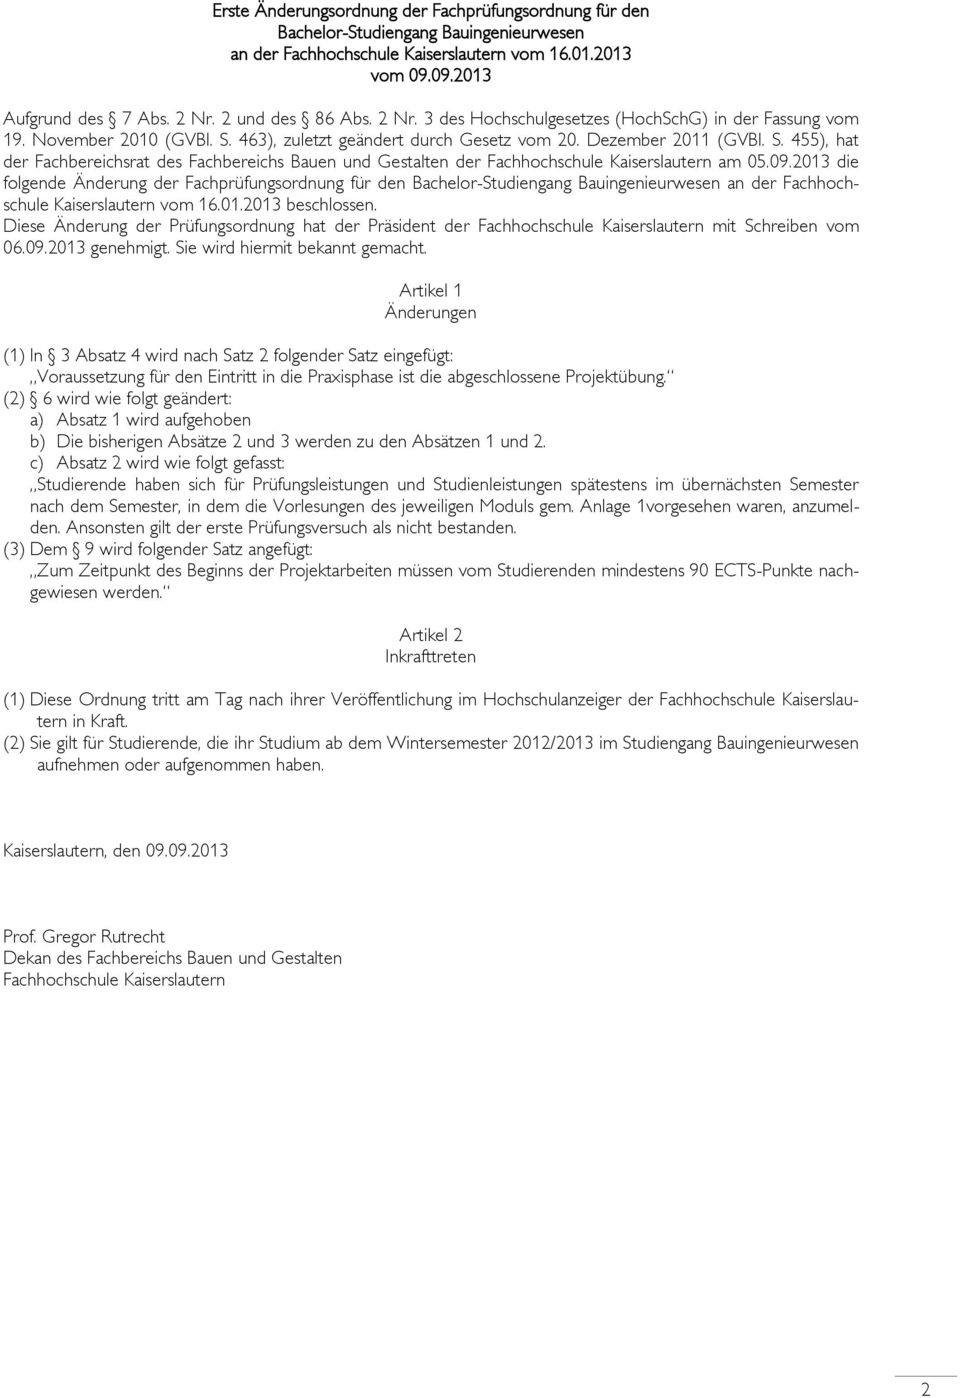 463), zuletzt geändert durch Gesetz vom 20. Dezember 2011 (GVBl. S. 455), hat der Fachbereichsrat des Fachbereichs Bauen und Gestalten der Fachhochschule Kaiserslautern am 05.09.